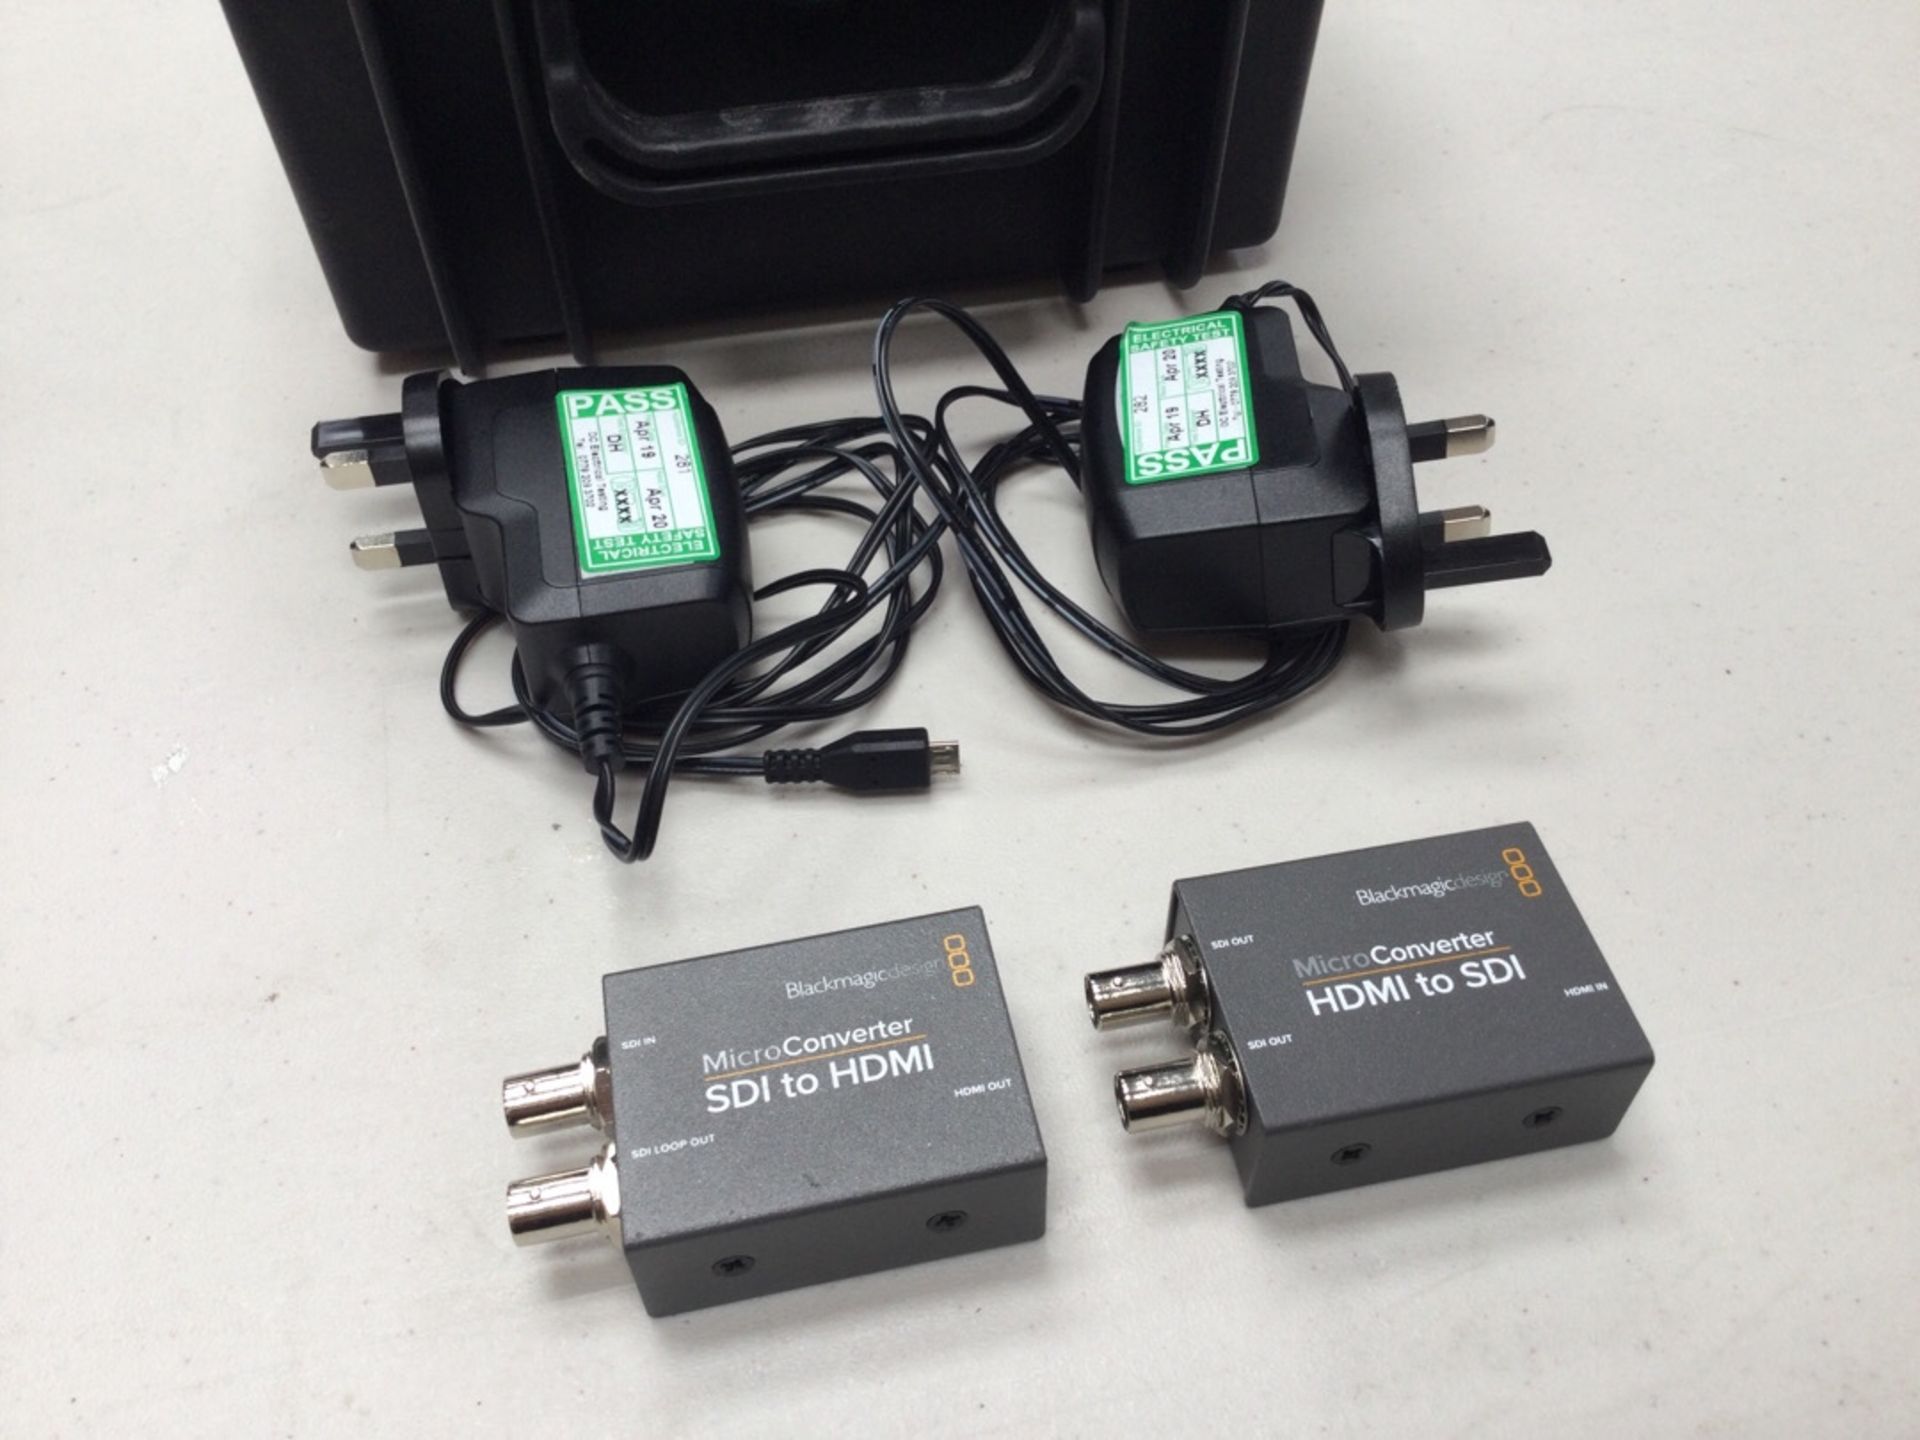 Blackmagicdesign Micro Converter Kit SDI to HDMI / HDMI to SDI & PSU’s c/w Flightcase